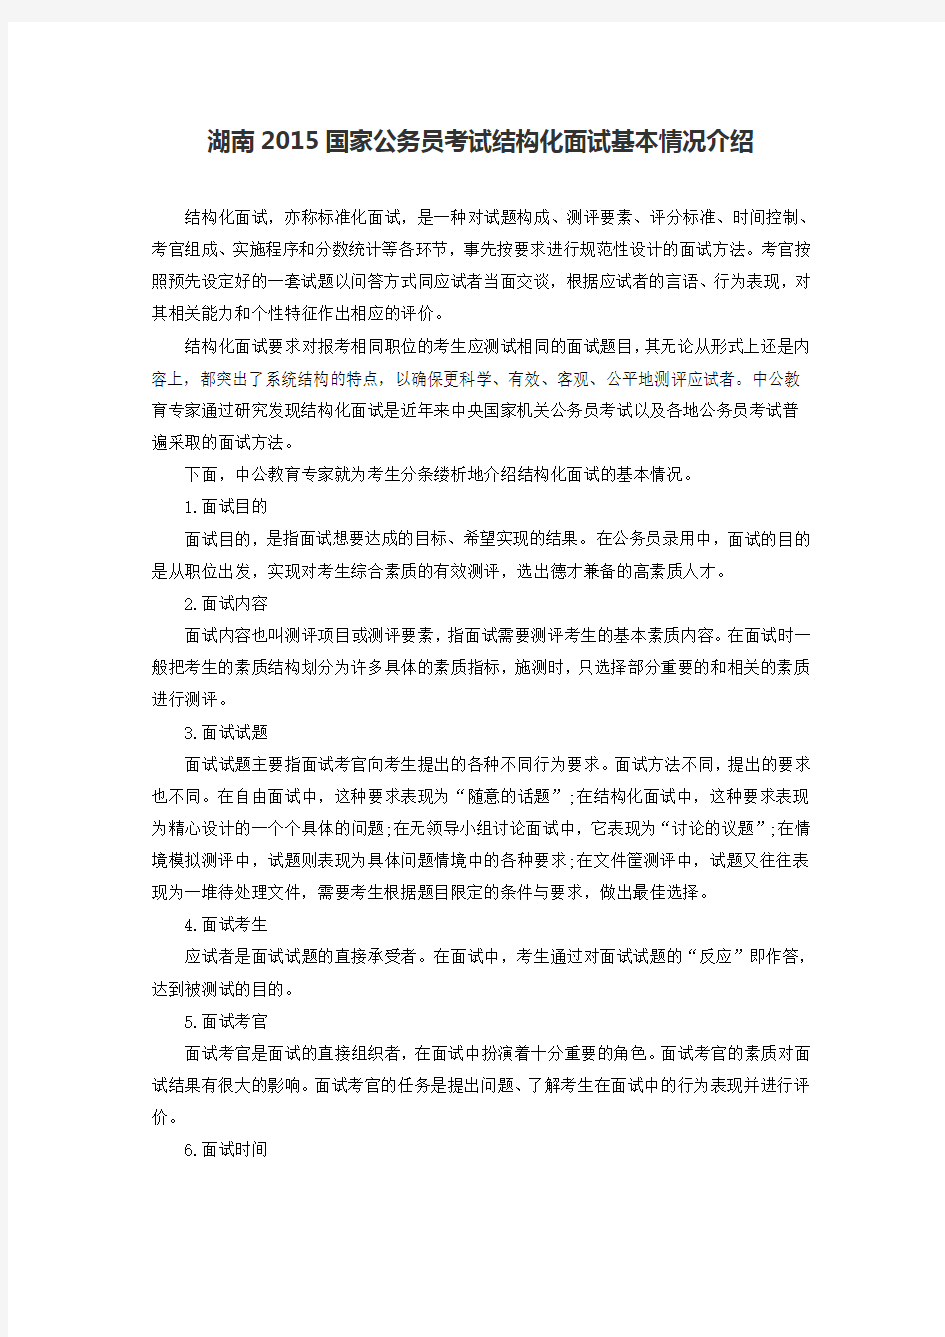 湖南2015国家公务员考试结构化面试基本情况介绍